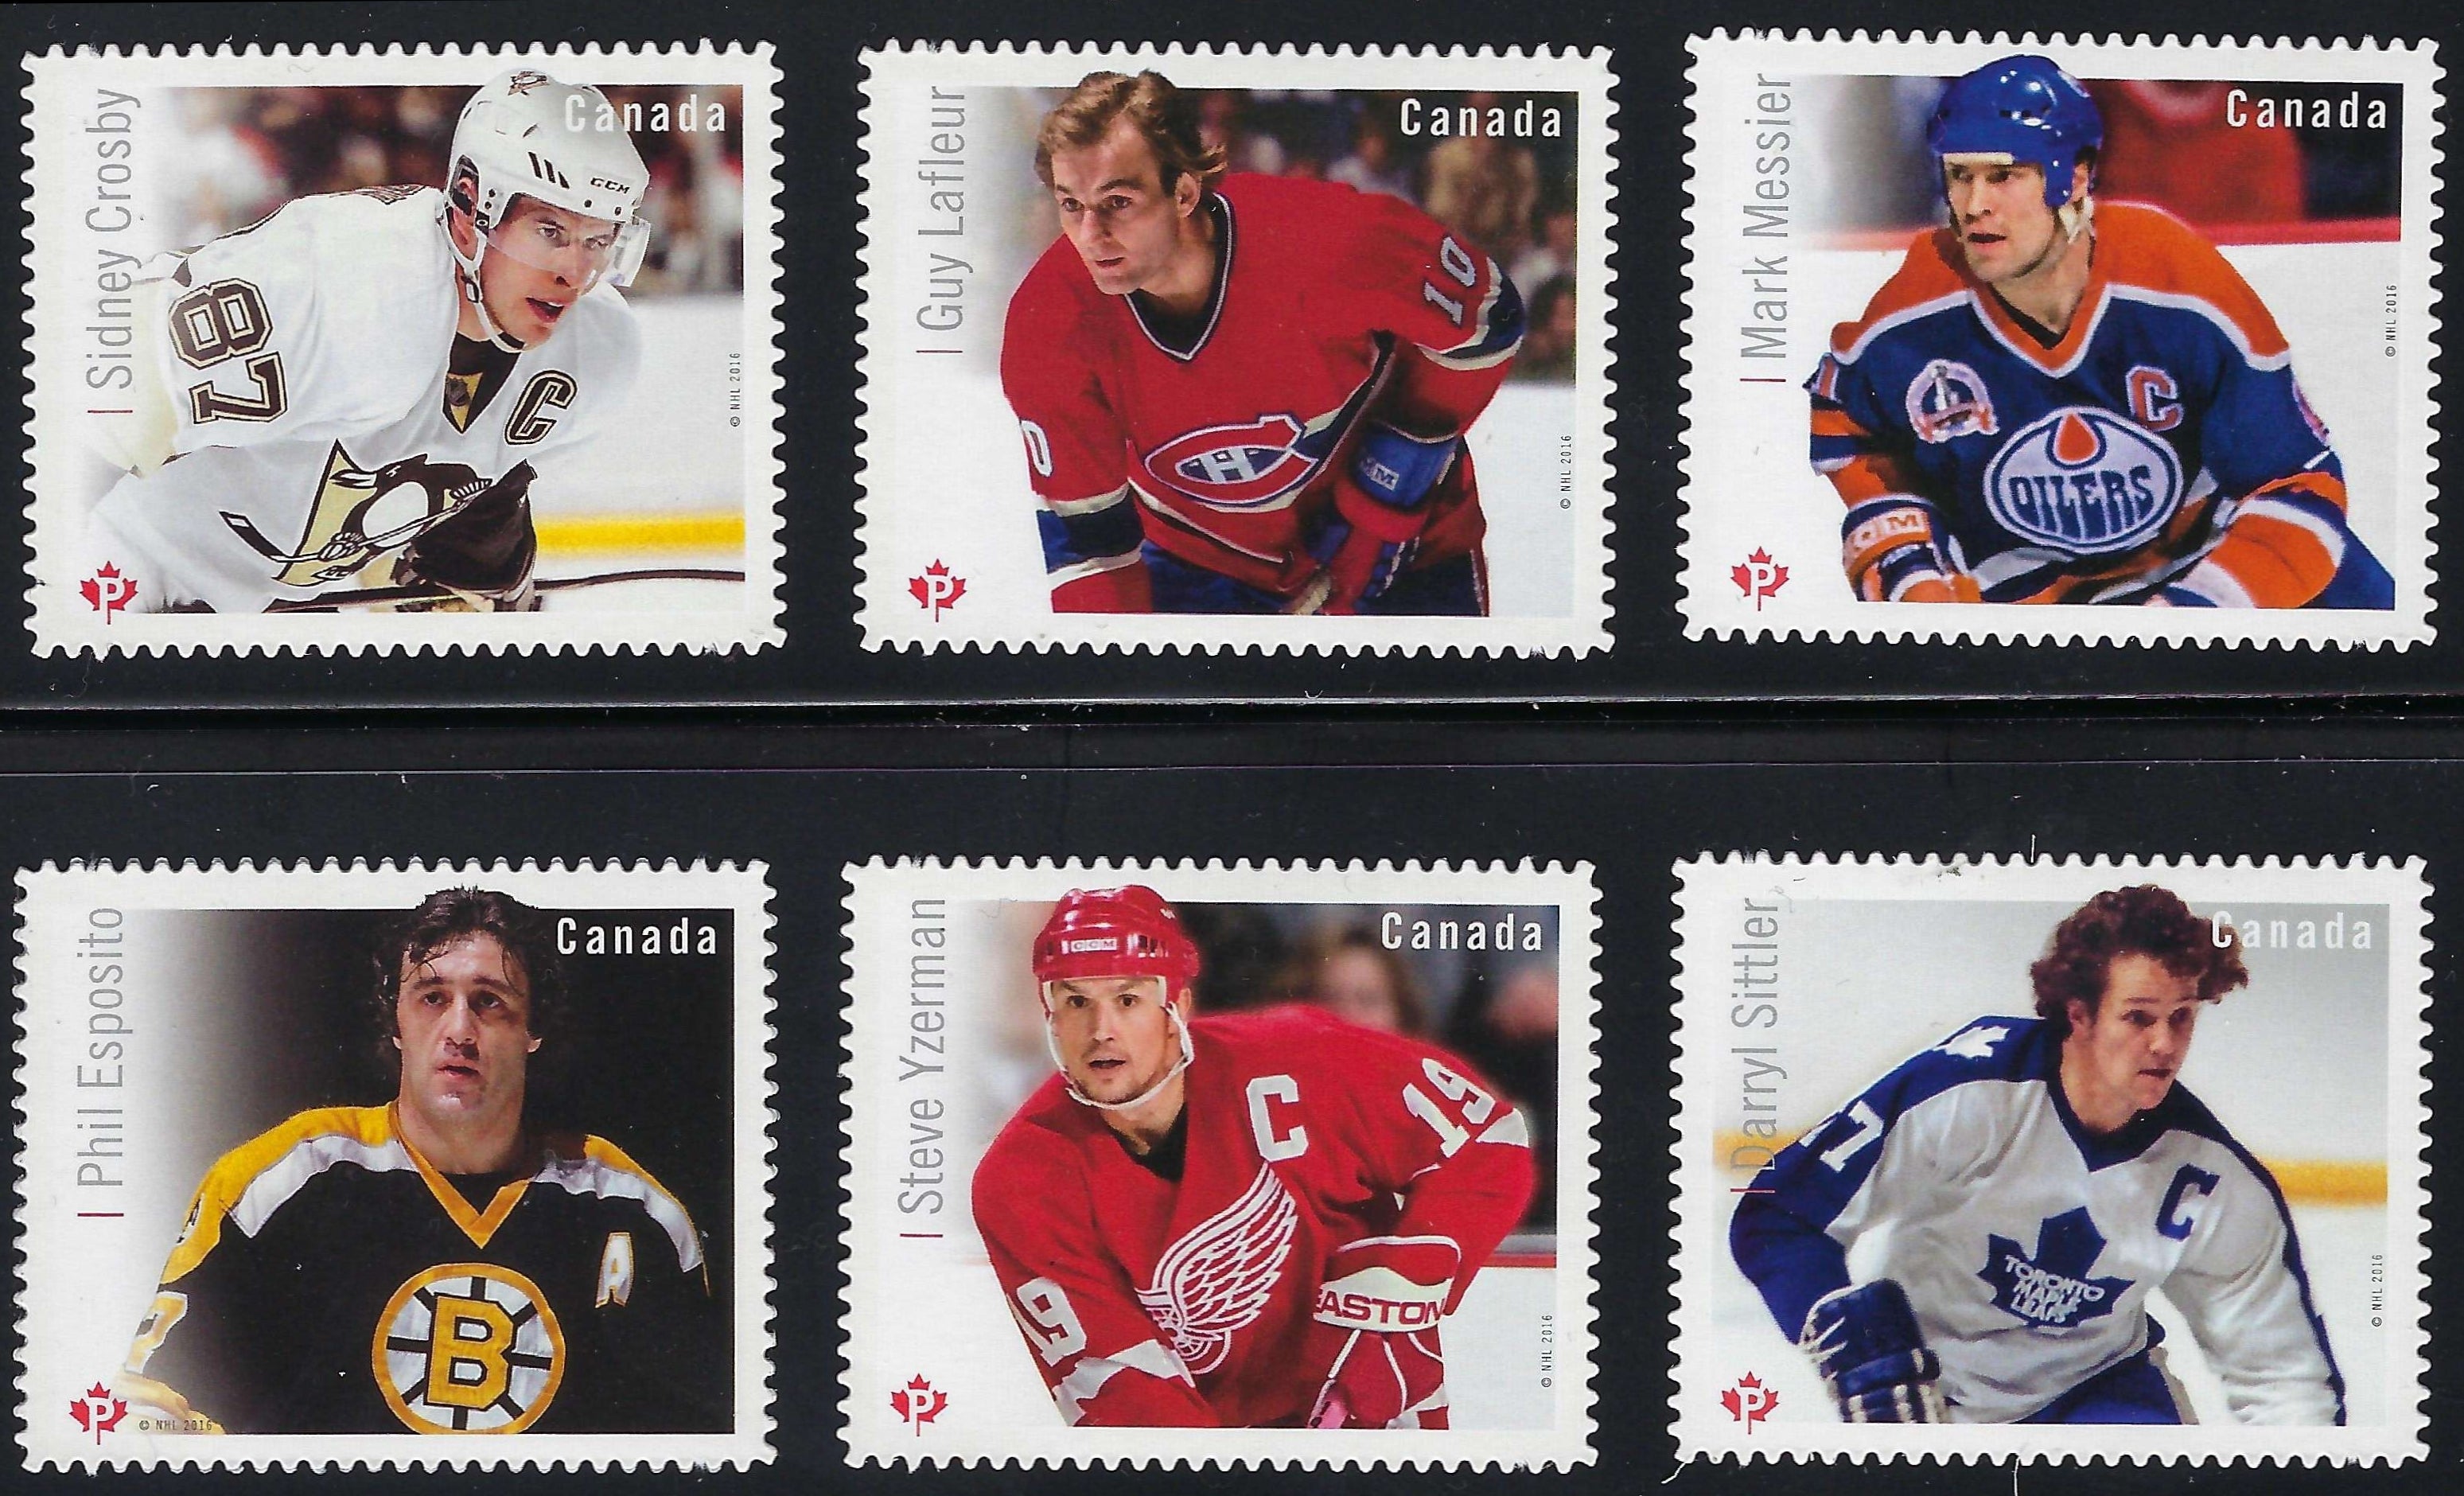 Darryl Sittler - Canada Postage Stamp